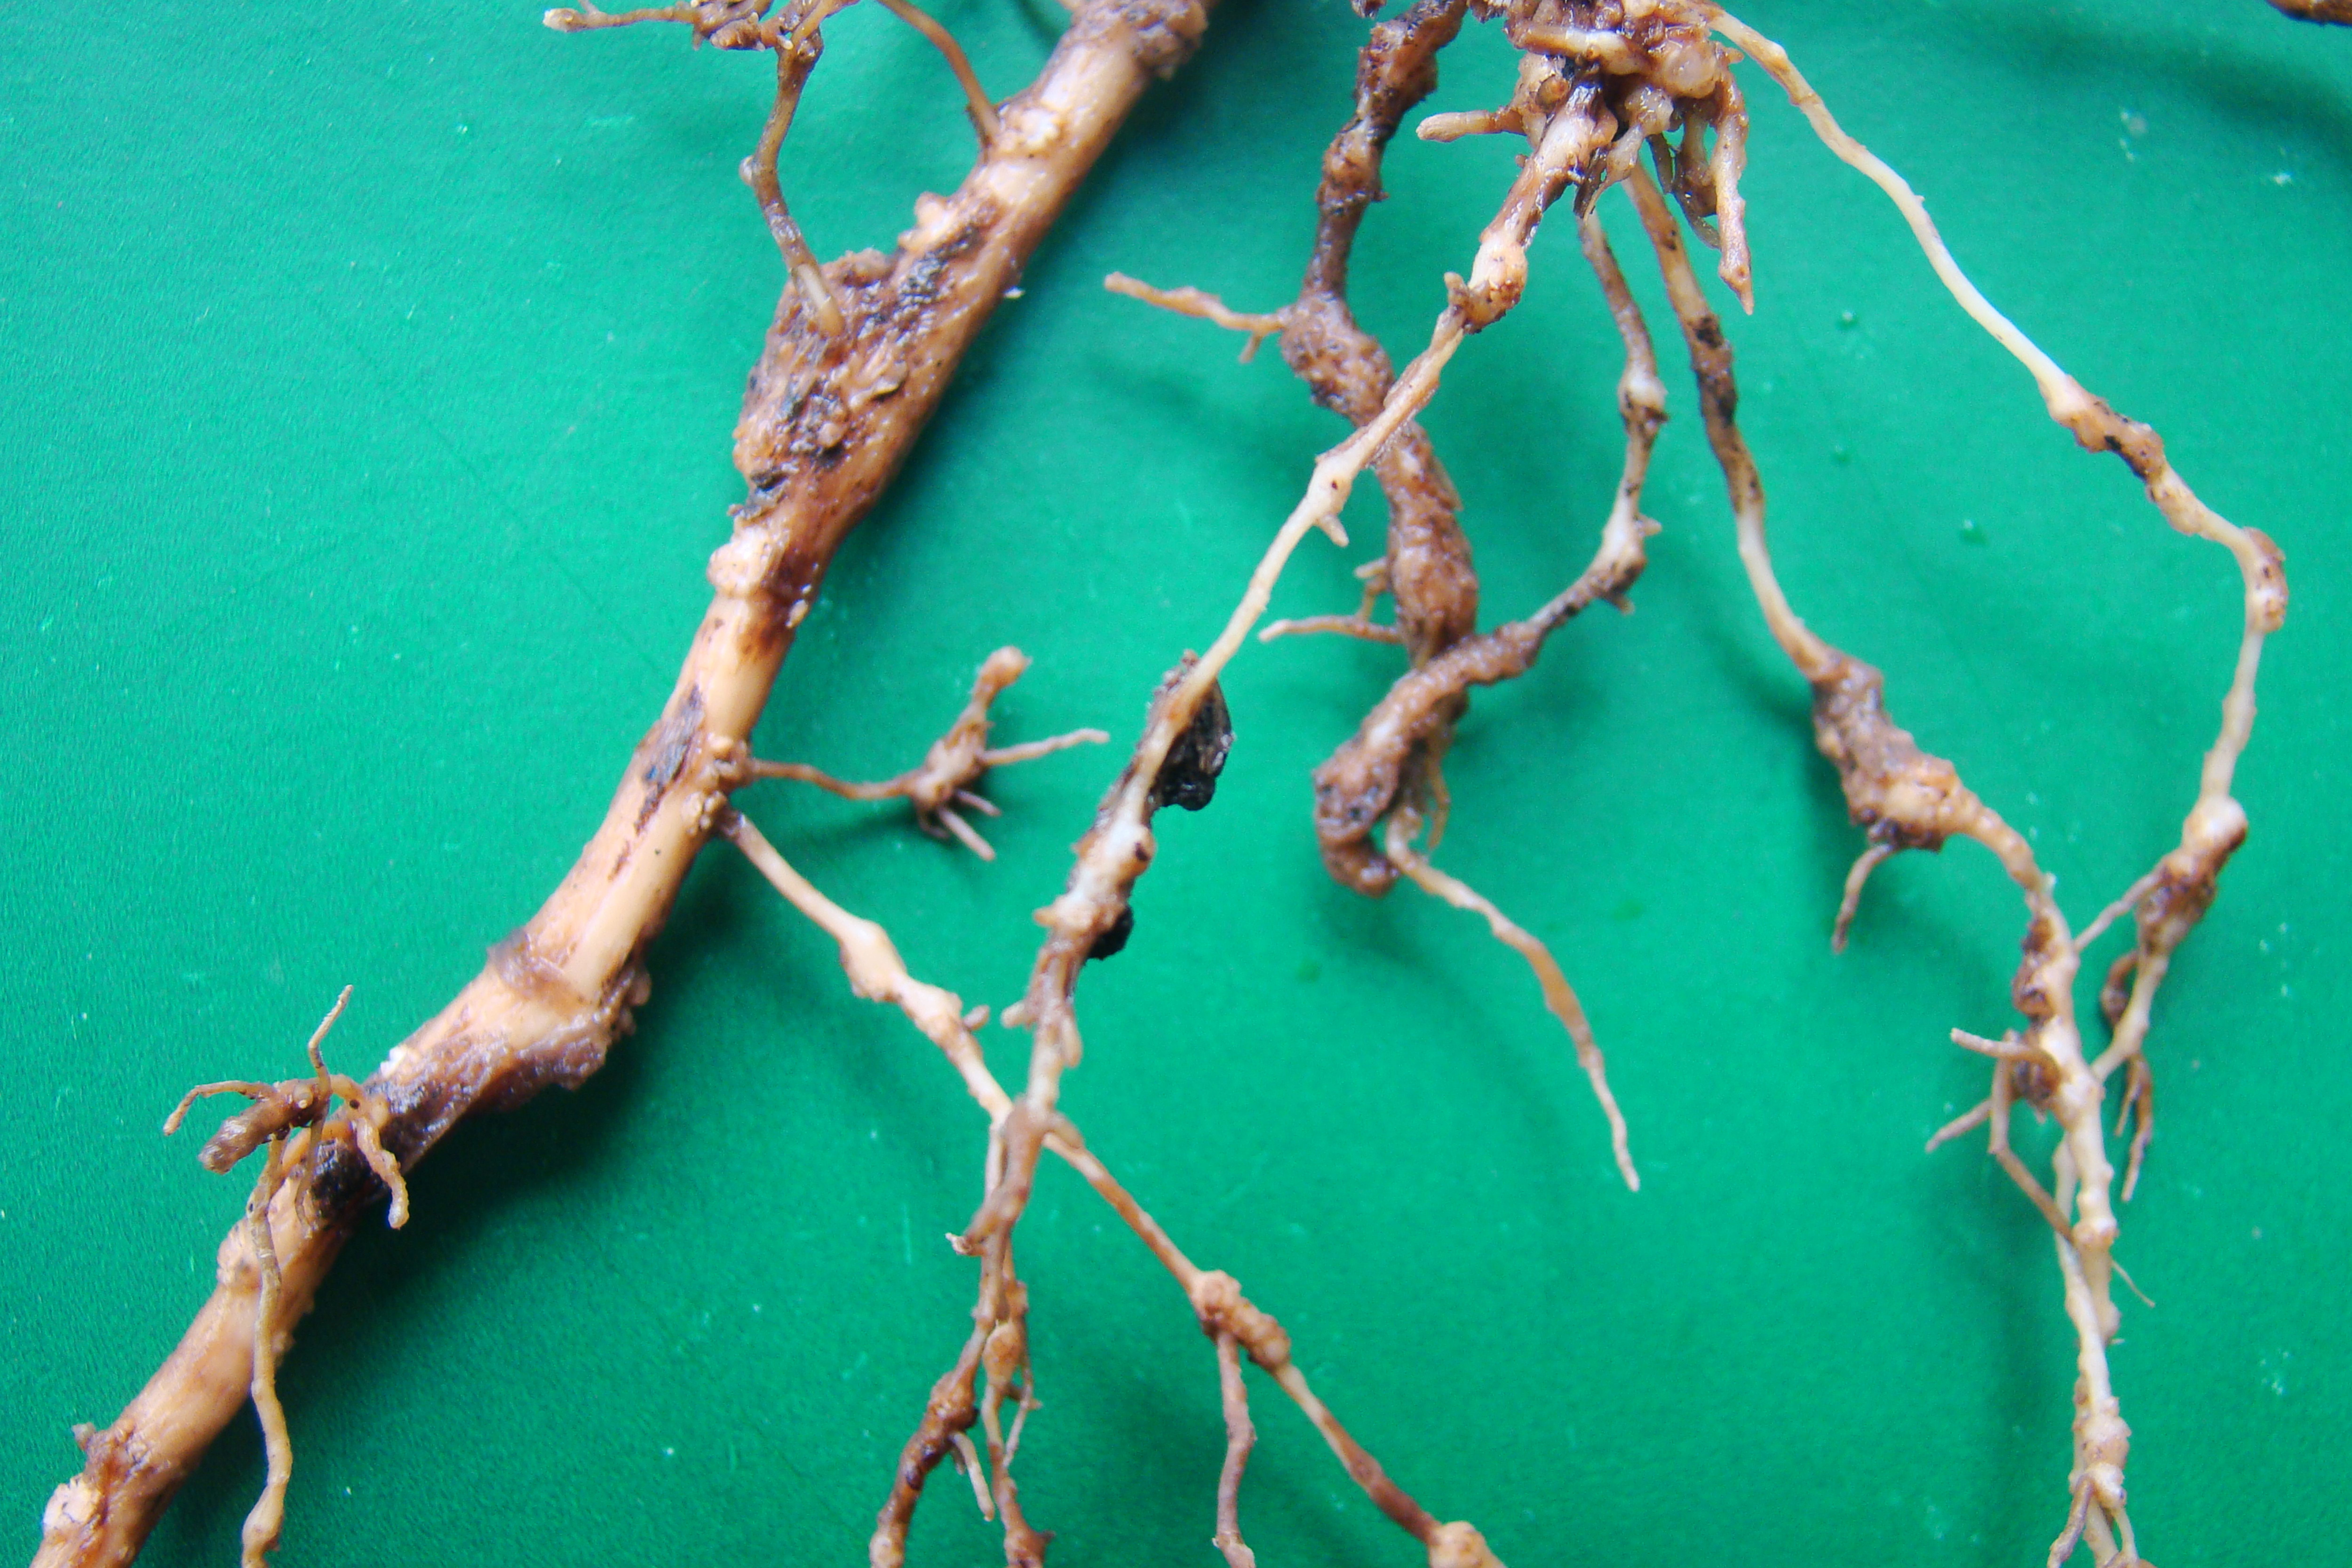 Sintomas de galhas em raiz de oliveira cultivar Koroneiki ocasionadas por Meloidogyne javanica